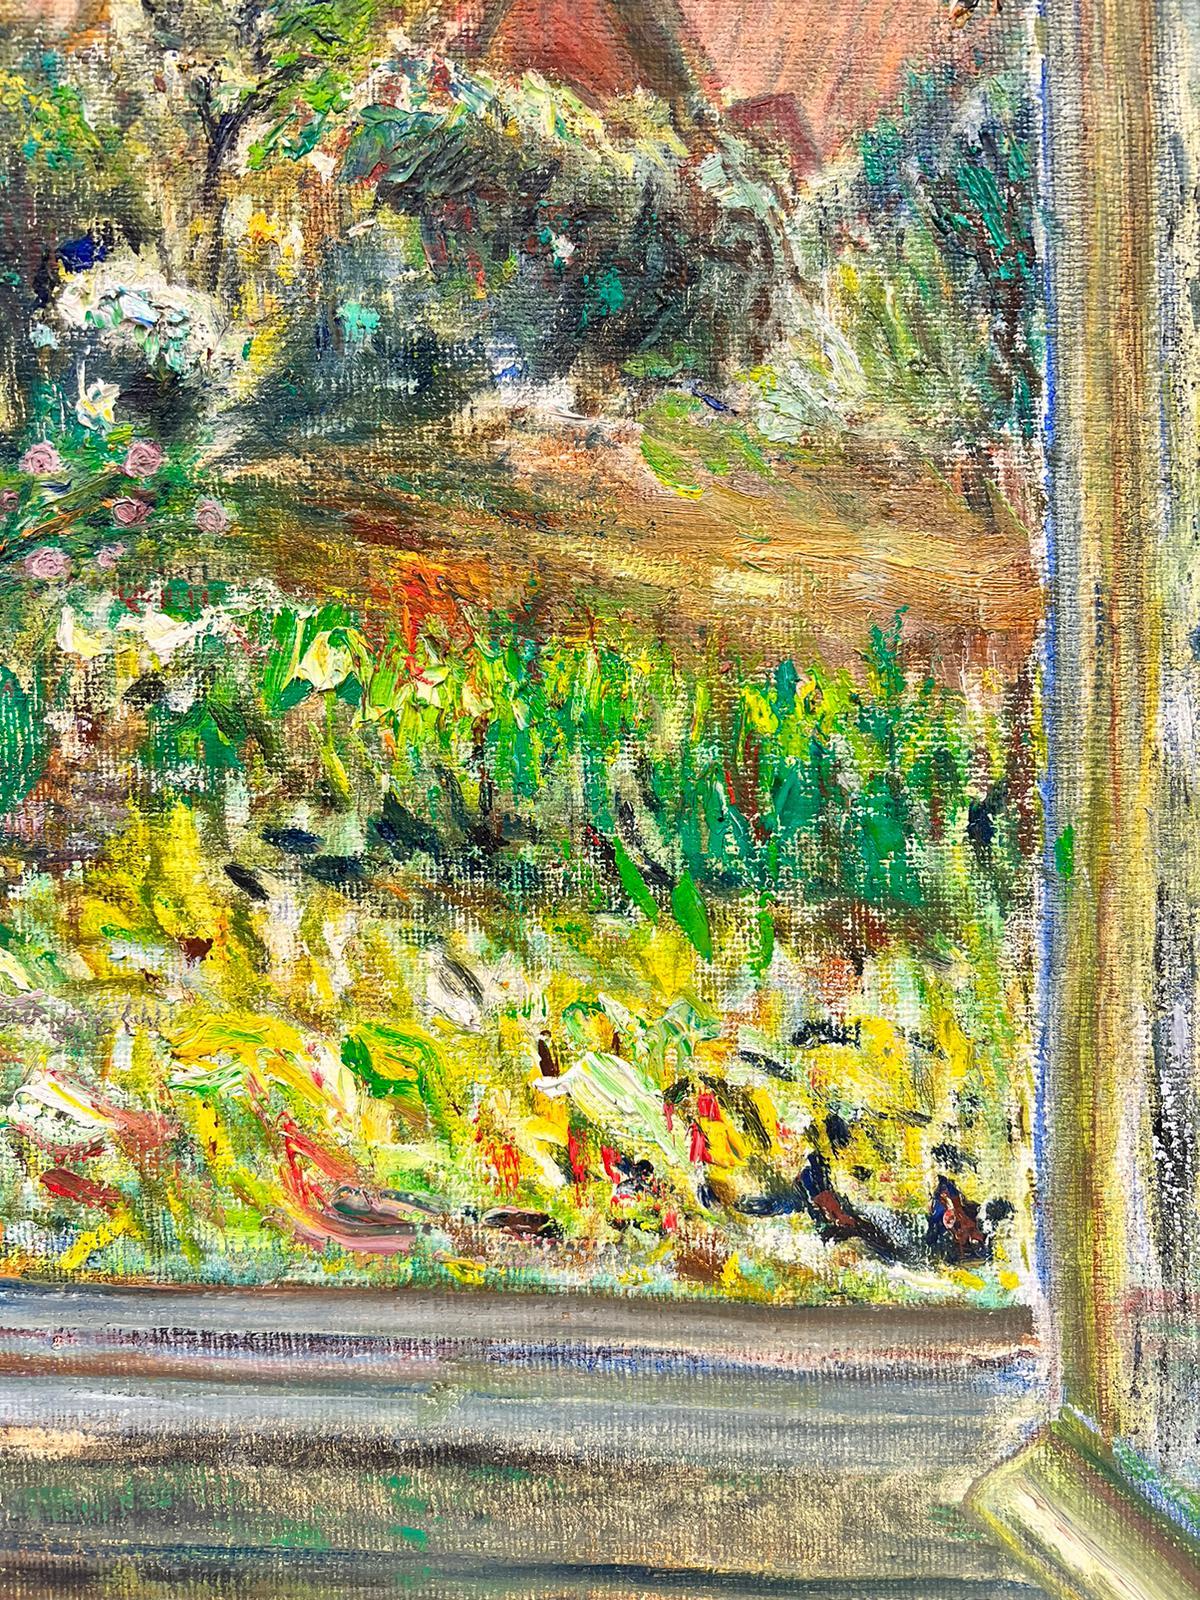 Artistics/ School : Impressionniste français du début des années 1900, probablement une esquisse inachevée, donc non signée. 

Titre : Vue d'un jardin de rêve, regardant par la fenêtre un paysage de jardin d'un vert profond et vibrant.

Médium :